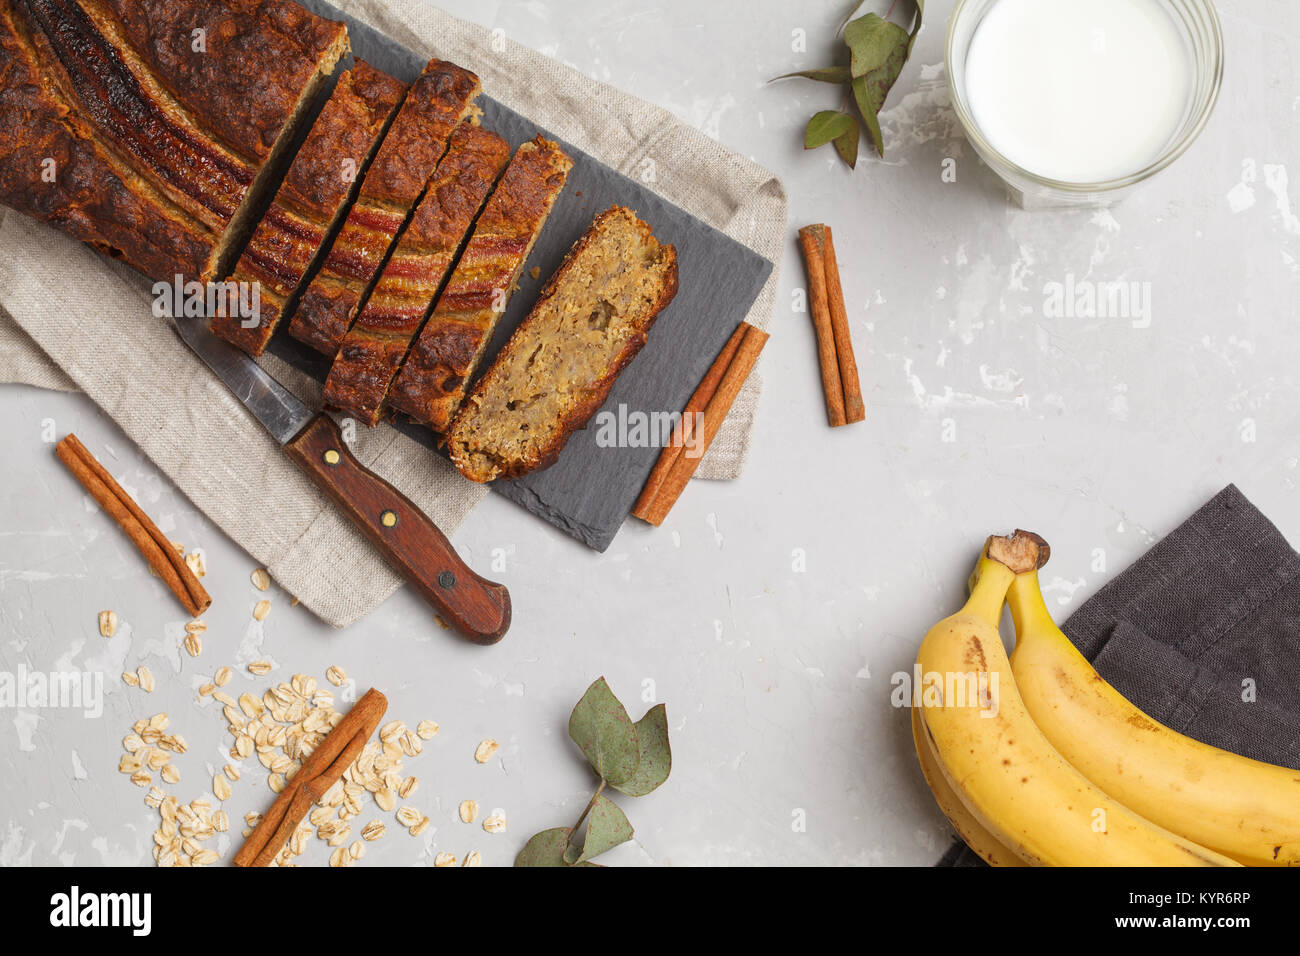 Rodajas de pan de plátano con canela en una pizarra negra. Concepto de comida vegana saludable. Vista desde arriba. Foto de stock